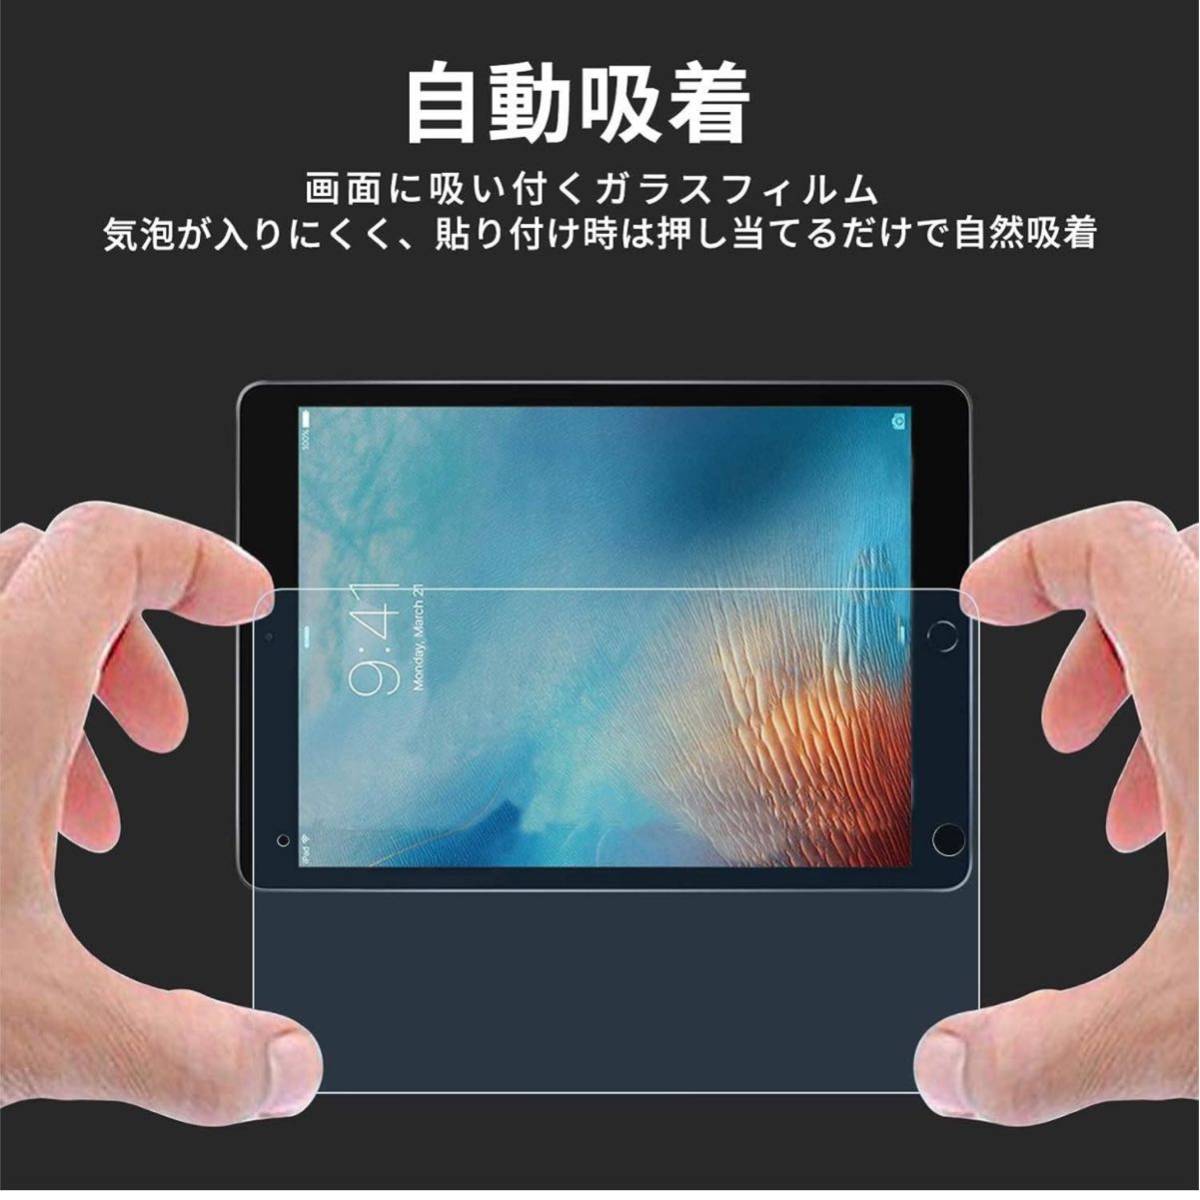 【開封のみ】Holdtech★ 【 ブルーライトカット】iPad 9.7 2018 第6世代/2017 5世代 ガラスフィルム【目の疲れ軽減】iPad 9.7 インチ _画像7